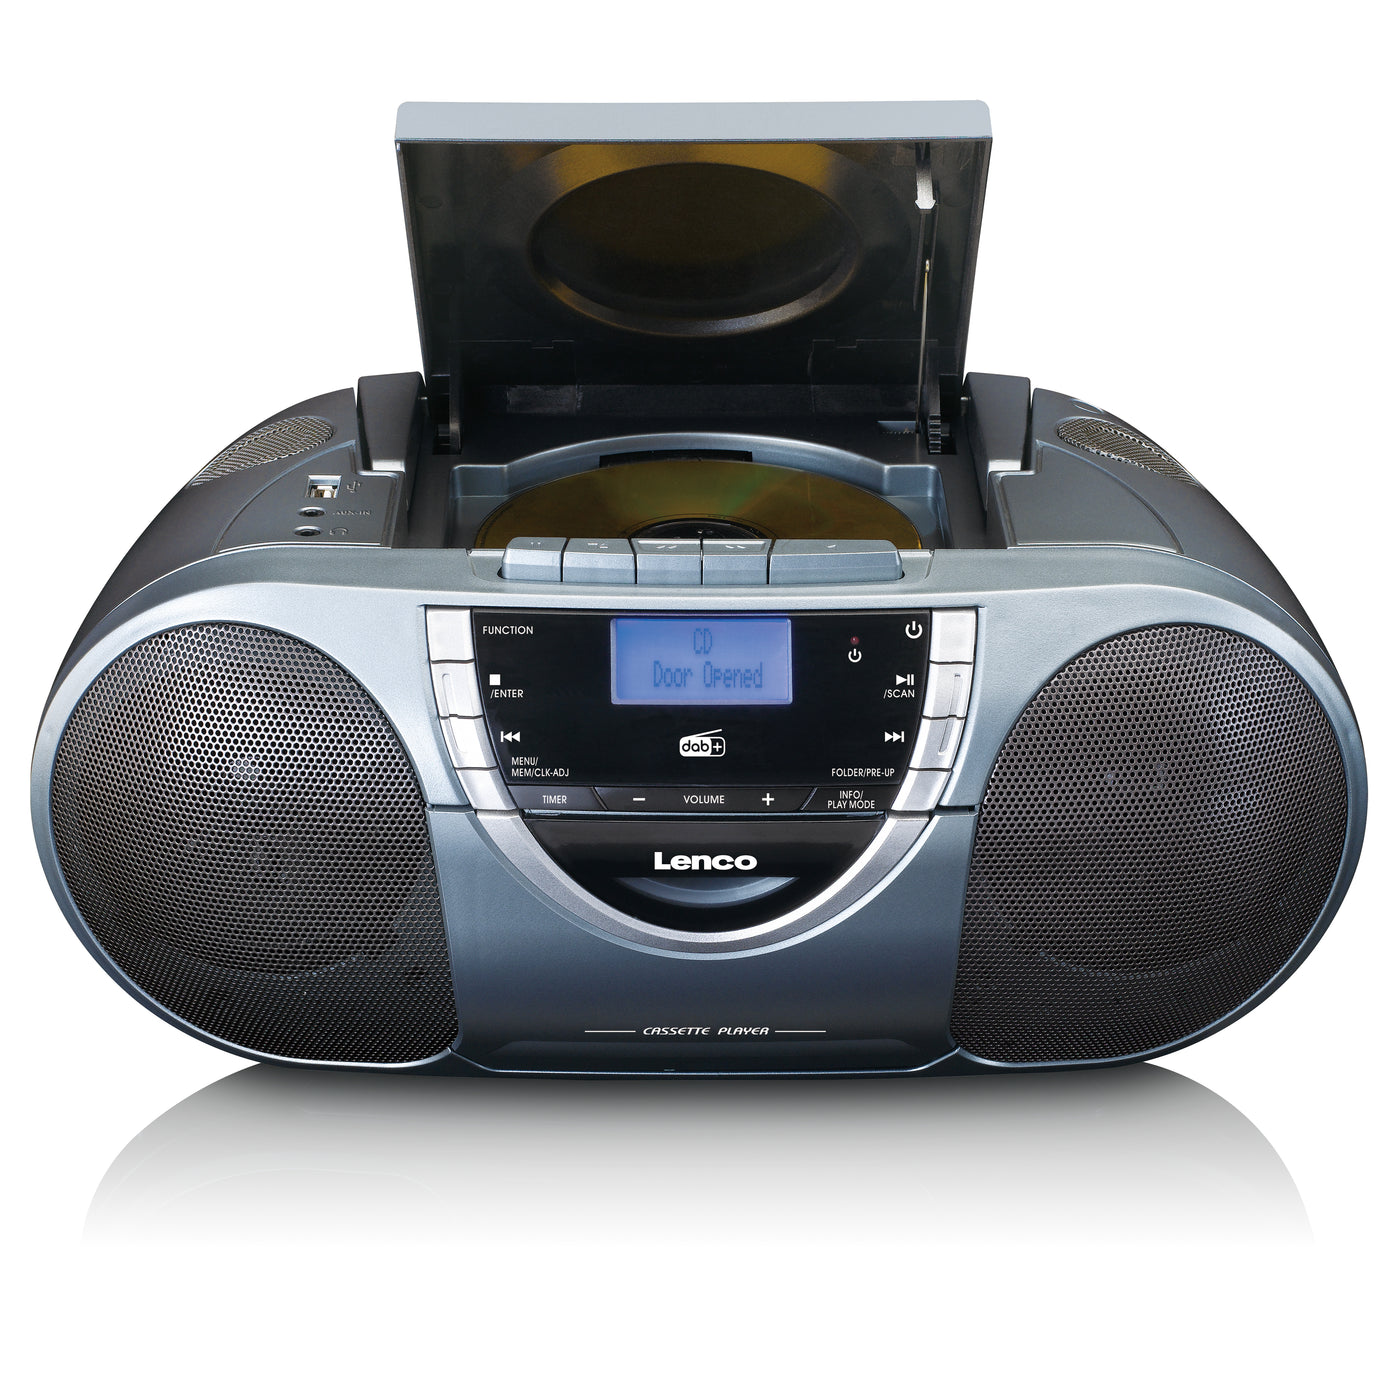 Lenco SCD-6800GY - Boombox avec radio DAB+, FM et lecteur CD/ MP3